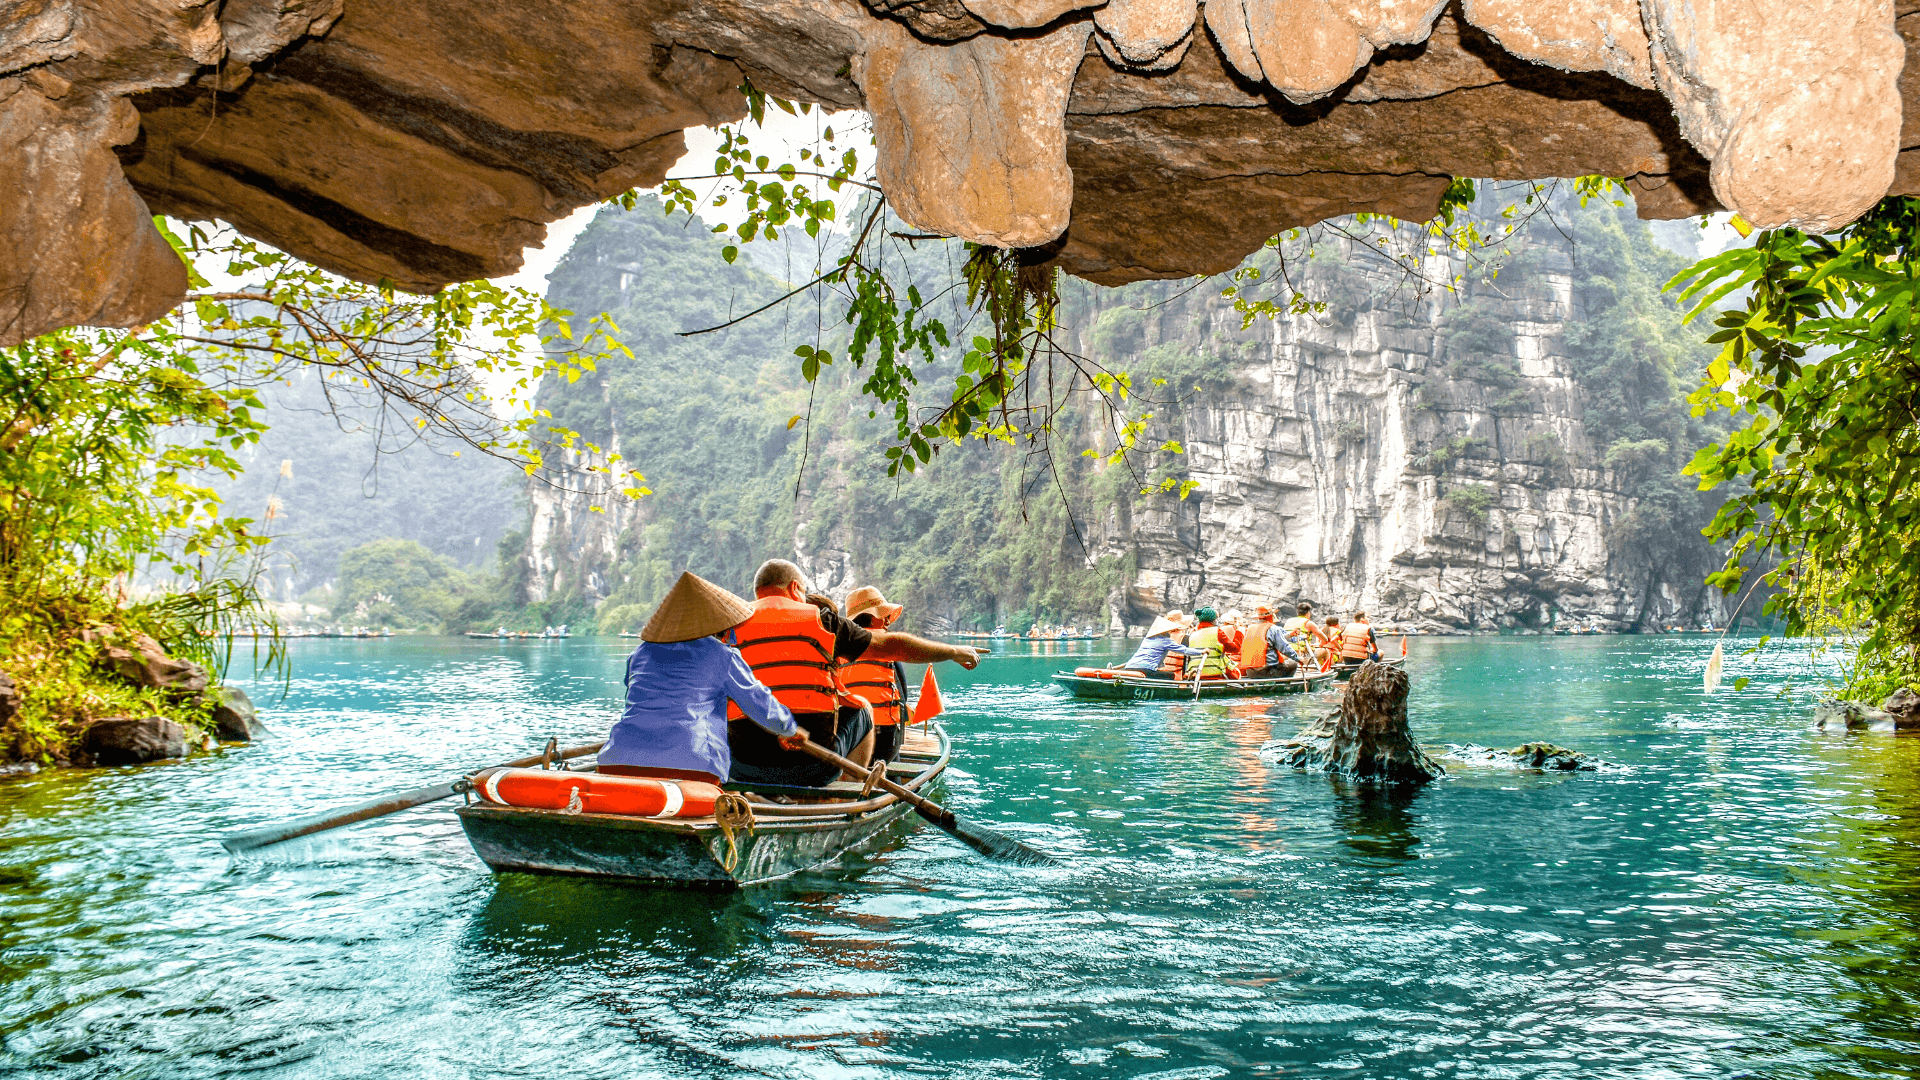 Tam Coc Caves in Vietnam